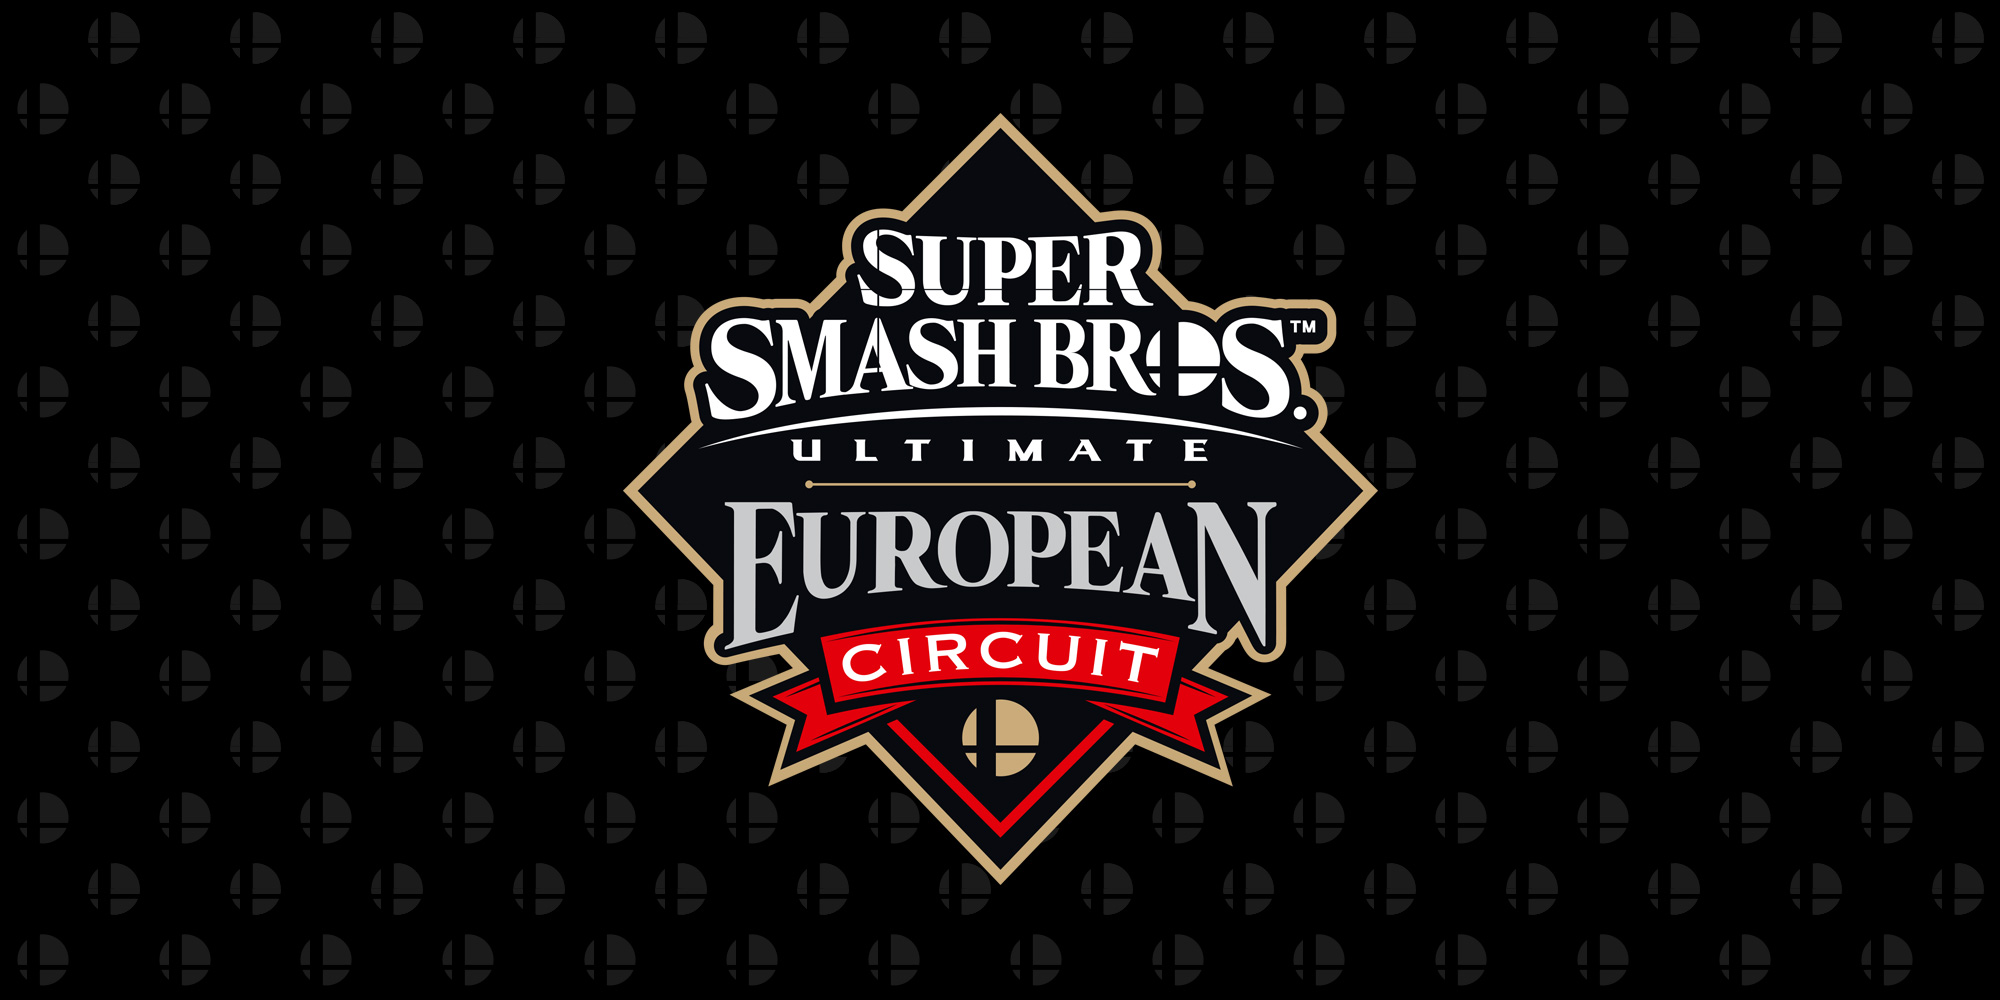 Qualifiziere dich jetzt für das große Finale des Super Smash Bros. Ultimate European Circuit im „Last Chance Qualifier“!